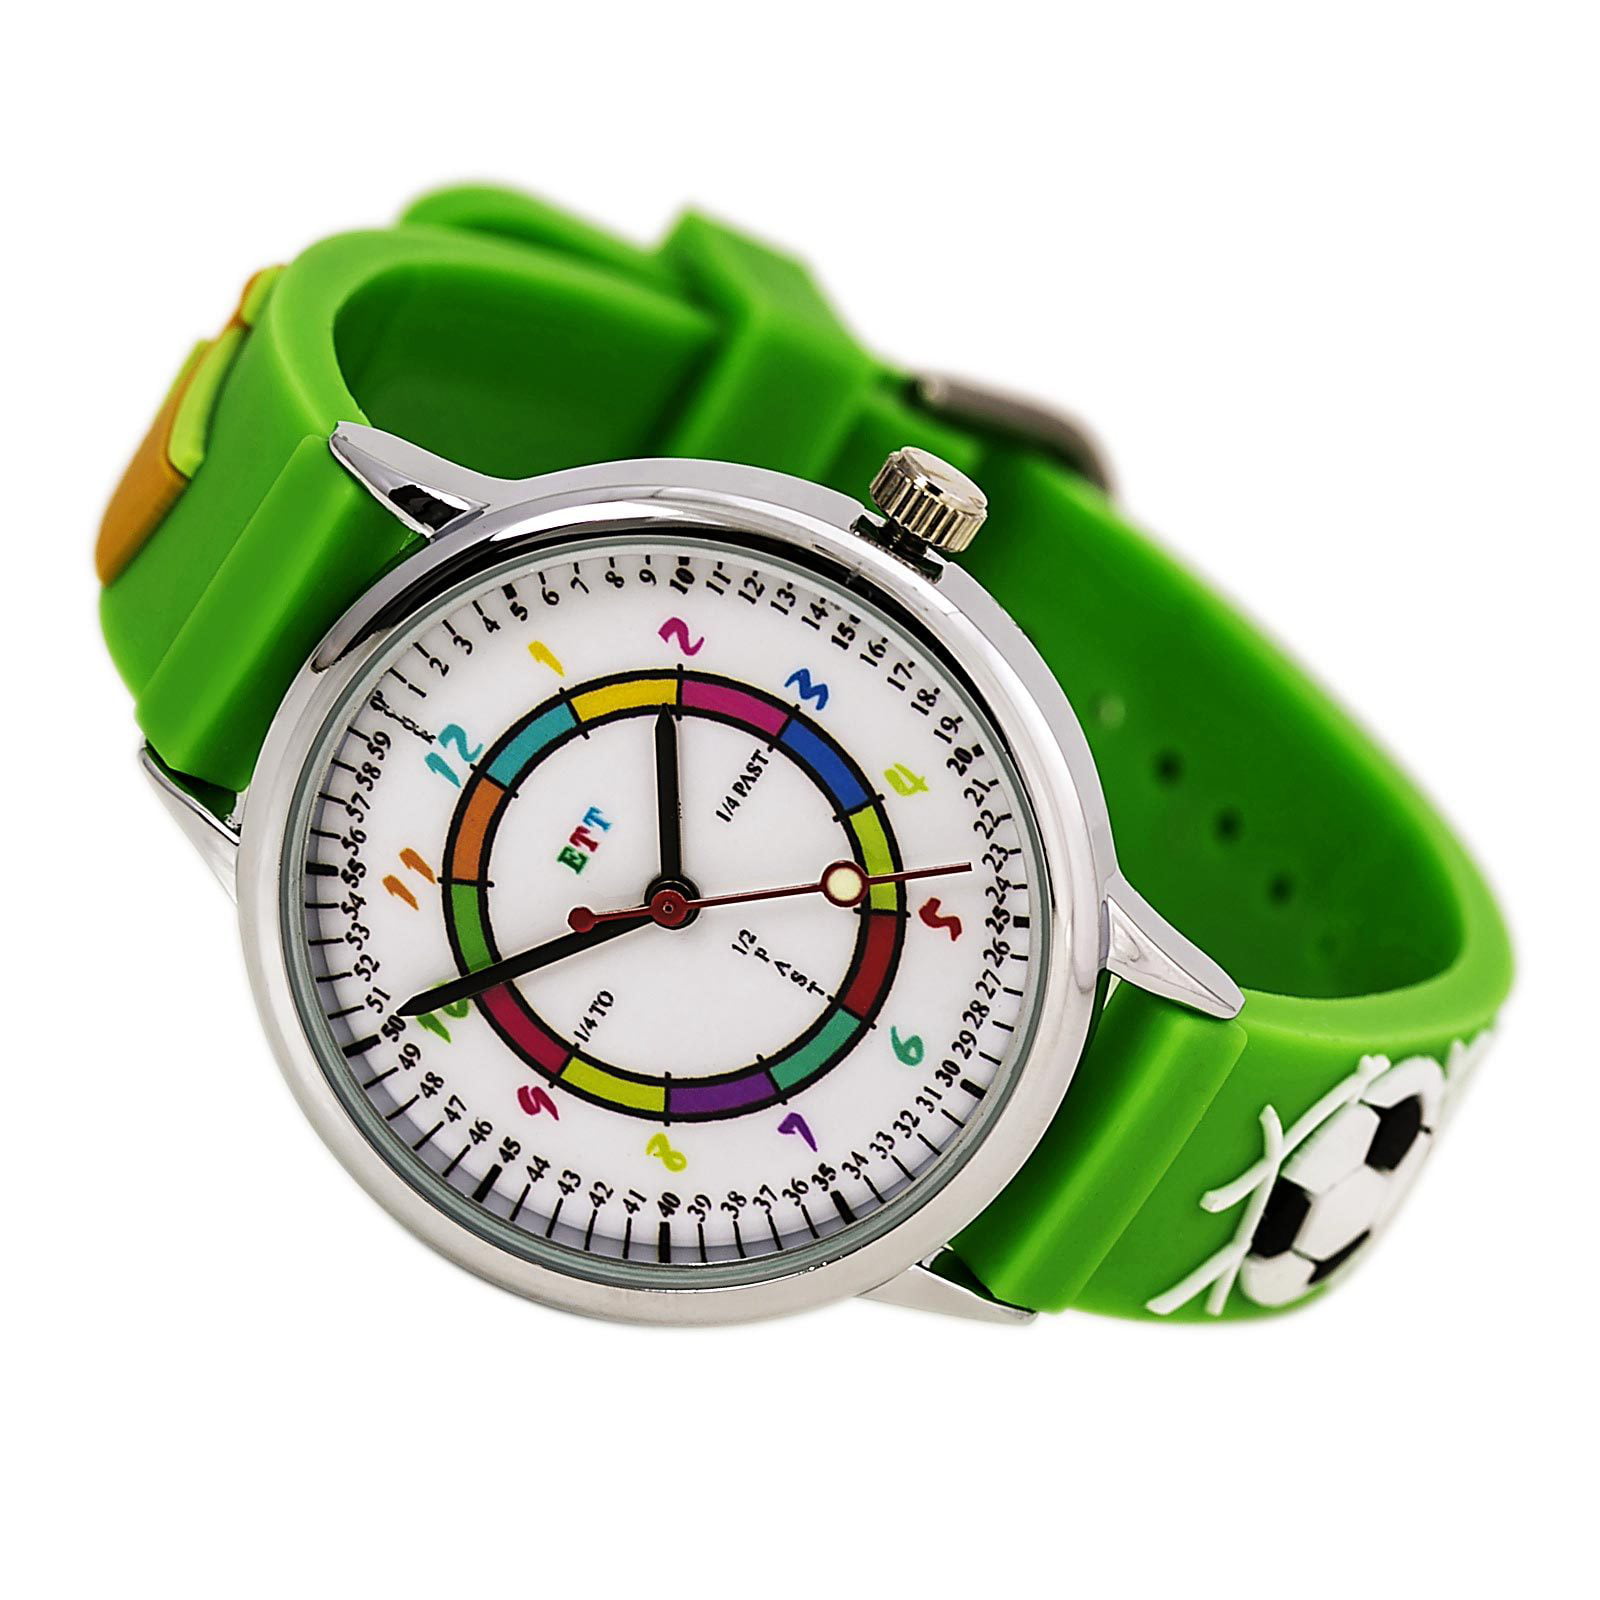 Easy Time Teller ETT101 Kid's White Dial Green Rubber Strap Time Teaching  Watch